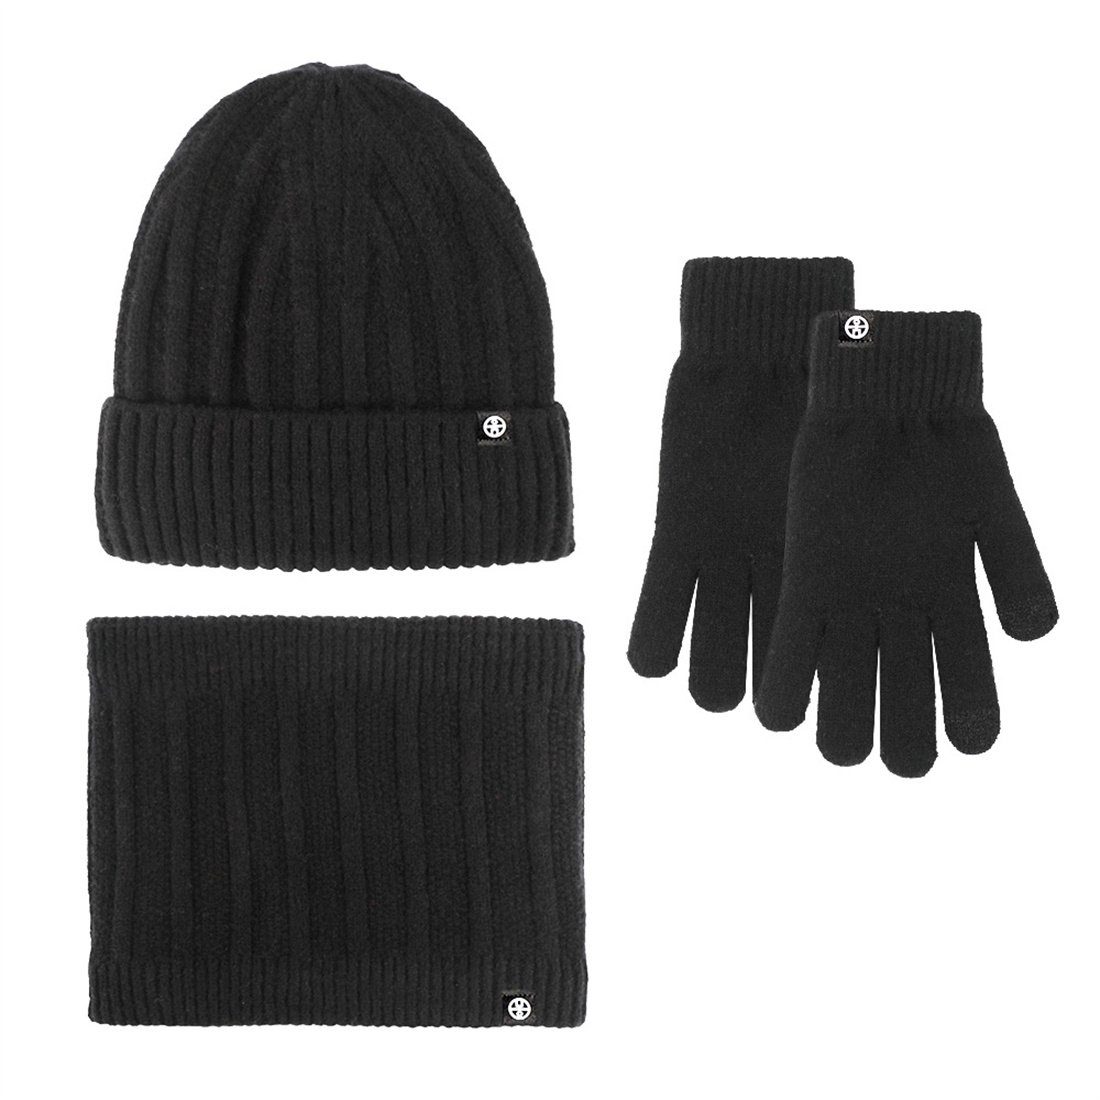 Strickmütze Schwarz 3 Schal Set, Mütze DÖRÖY Warme Winter Unisex Handschuhe Set Stück Wollmütze